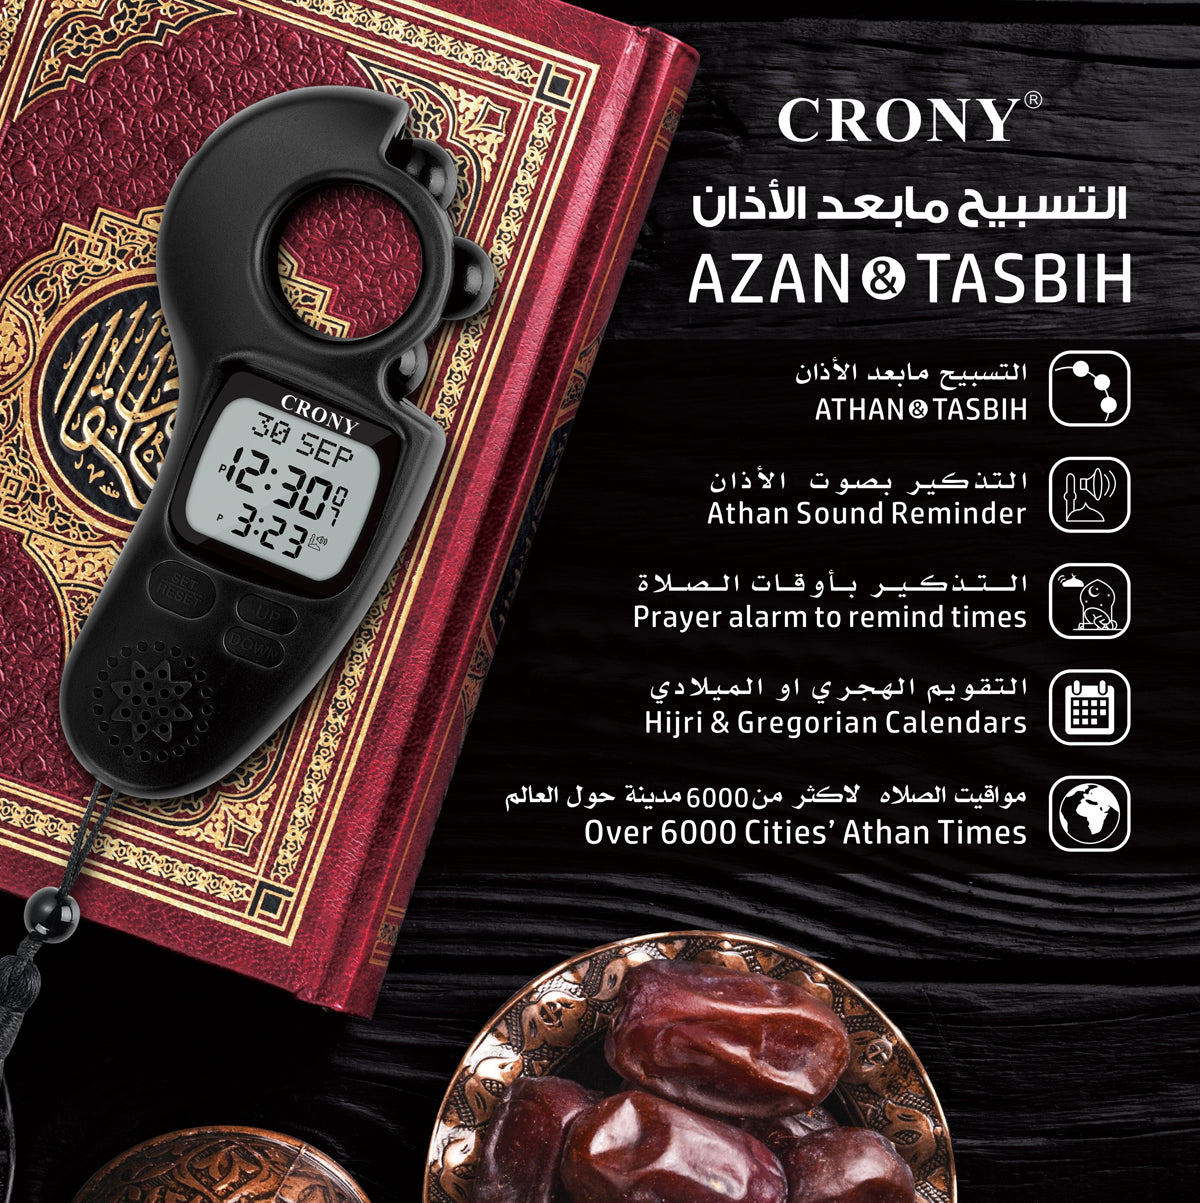 اطلب مسبحة الكترونية كورني CRONY AZAN TASBIH Electronics Digital